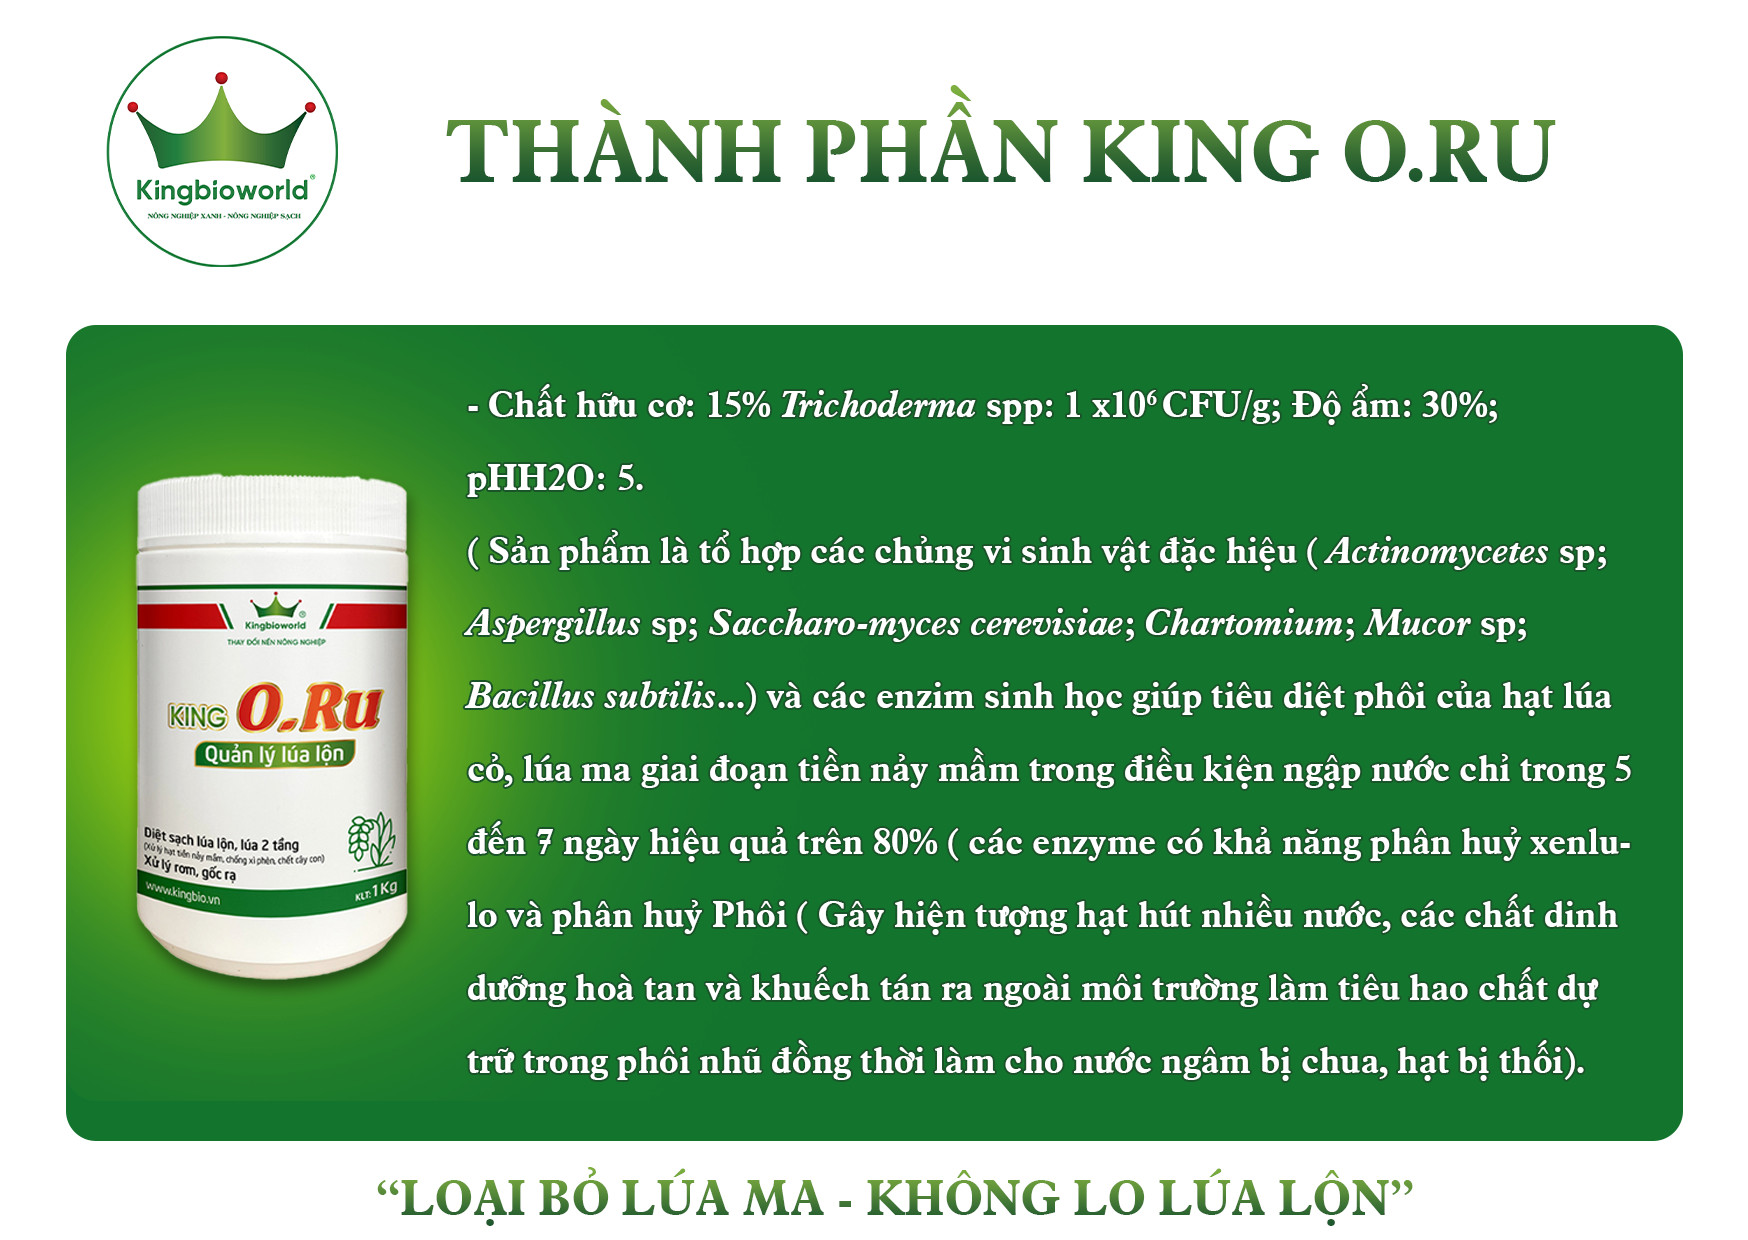 king-oru-thuoc-quan-ly-lua-lon-tieu-diet-lua-ma-lua-co-lua-2-tang-triet-de-1